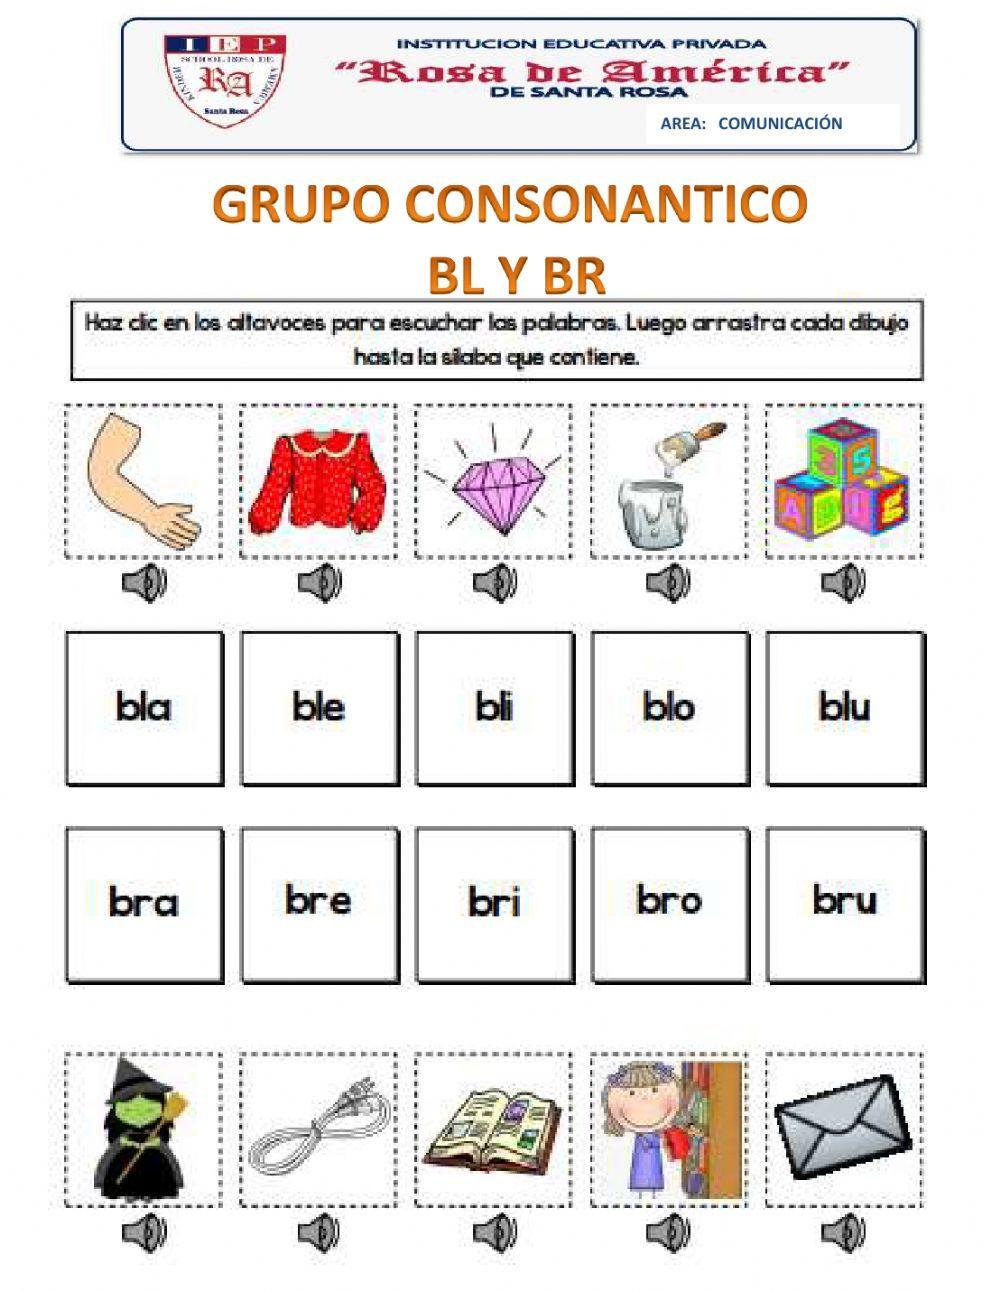 Grupo consonantico br y bl